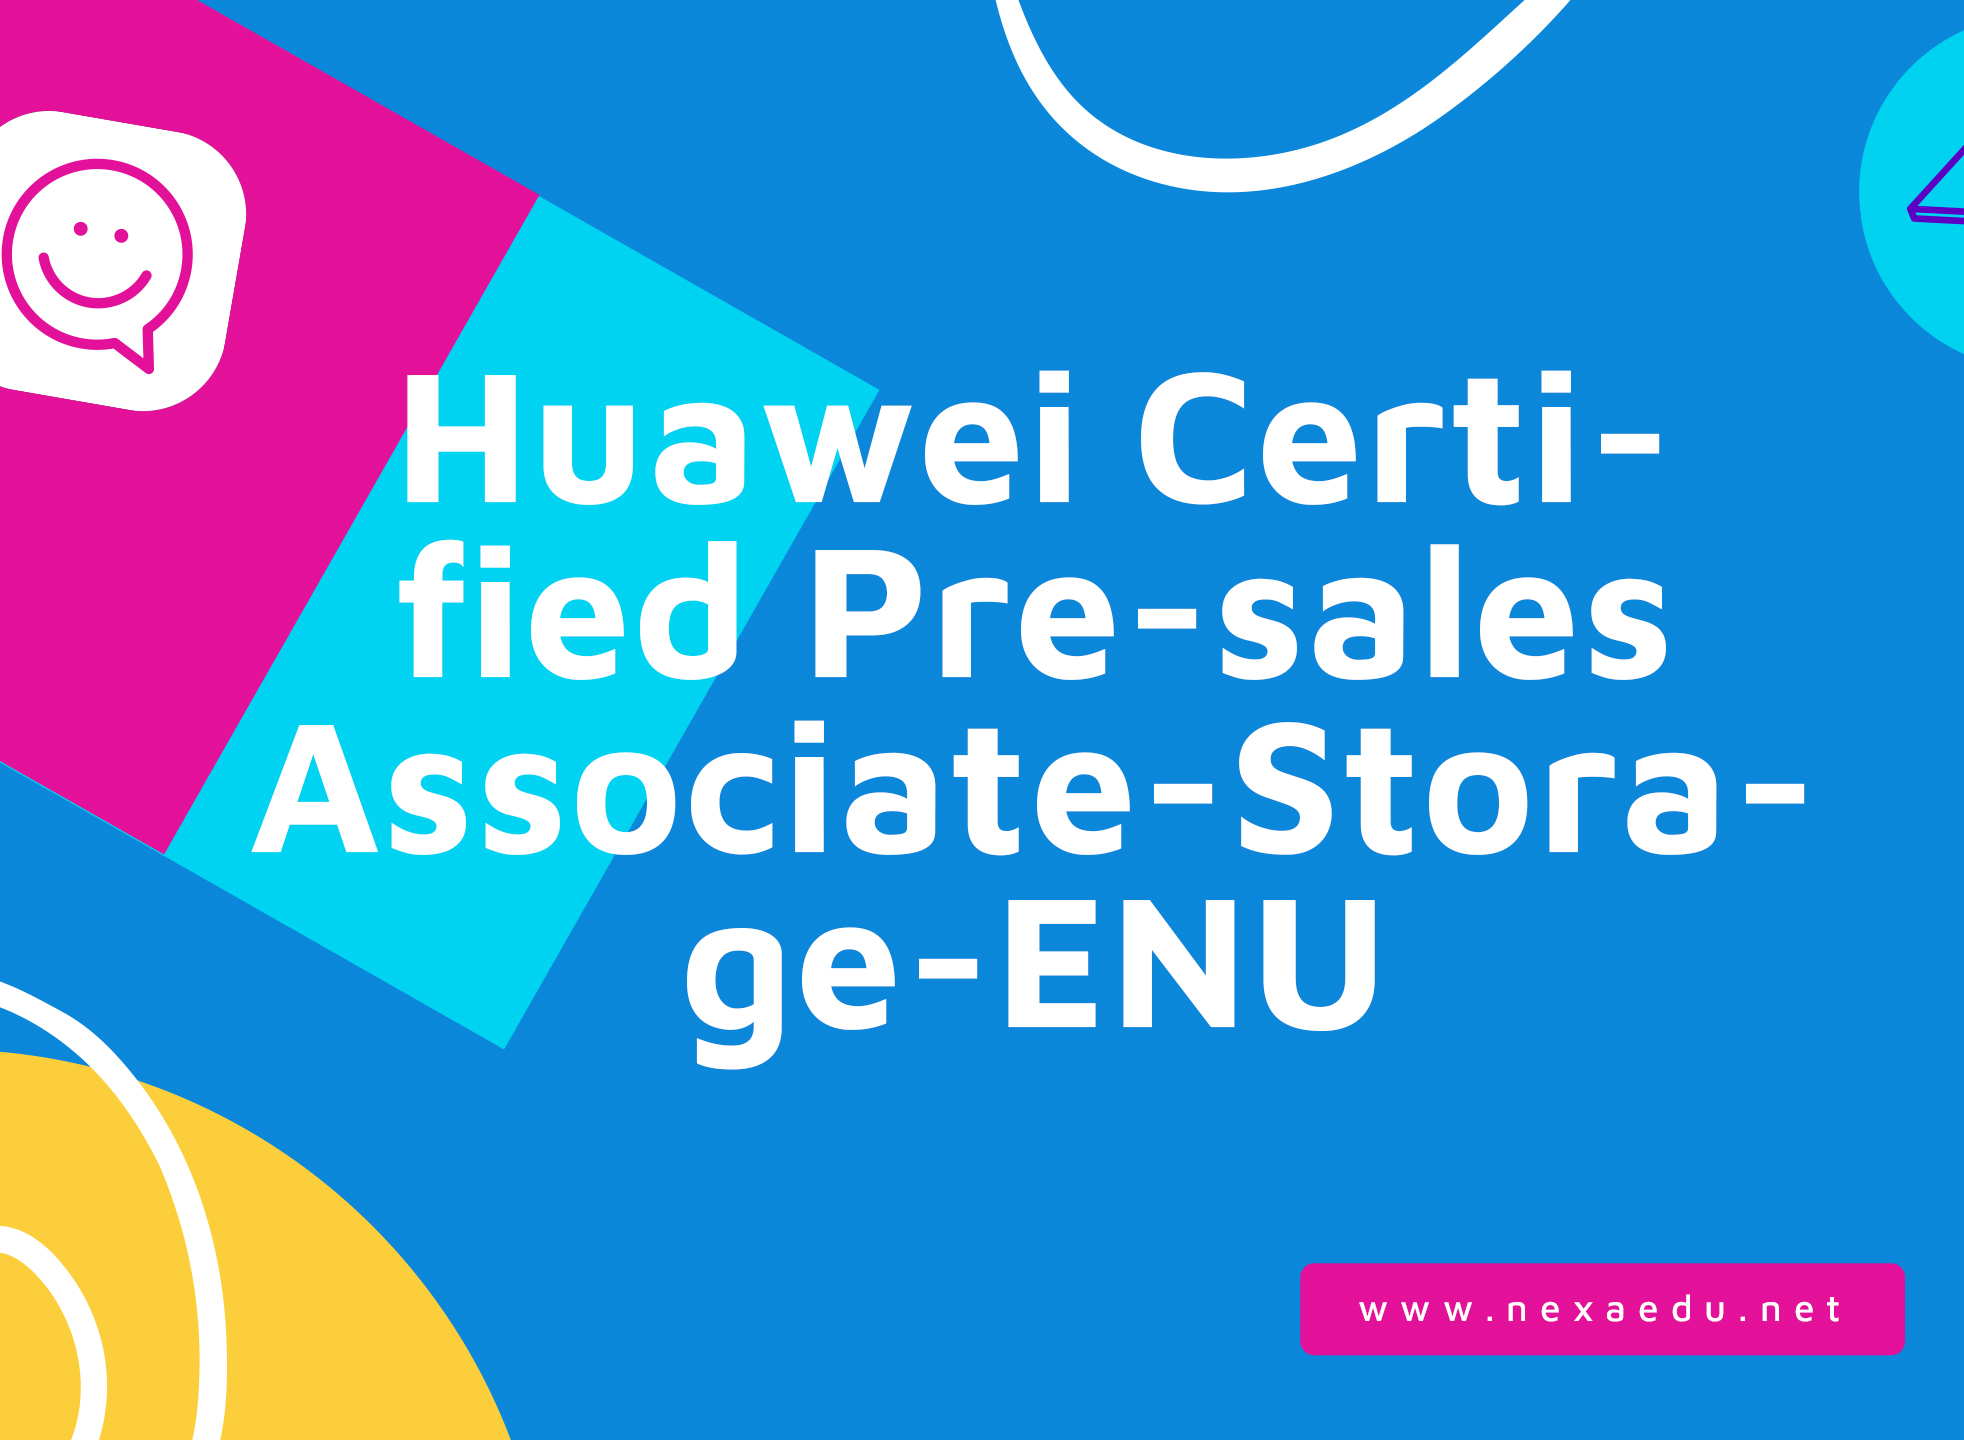 Huawei Certified Pre-sales Associate-Storage-ENU